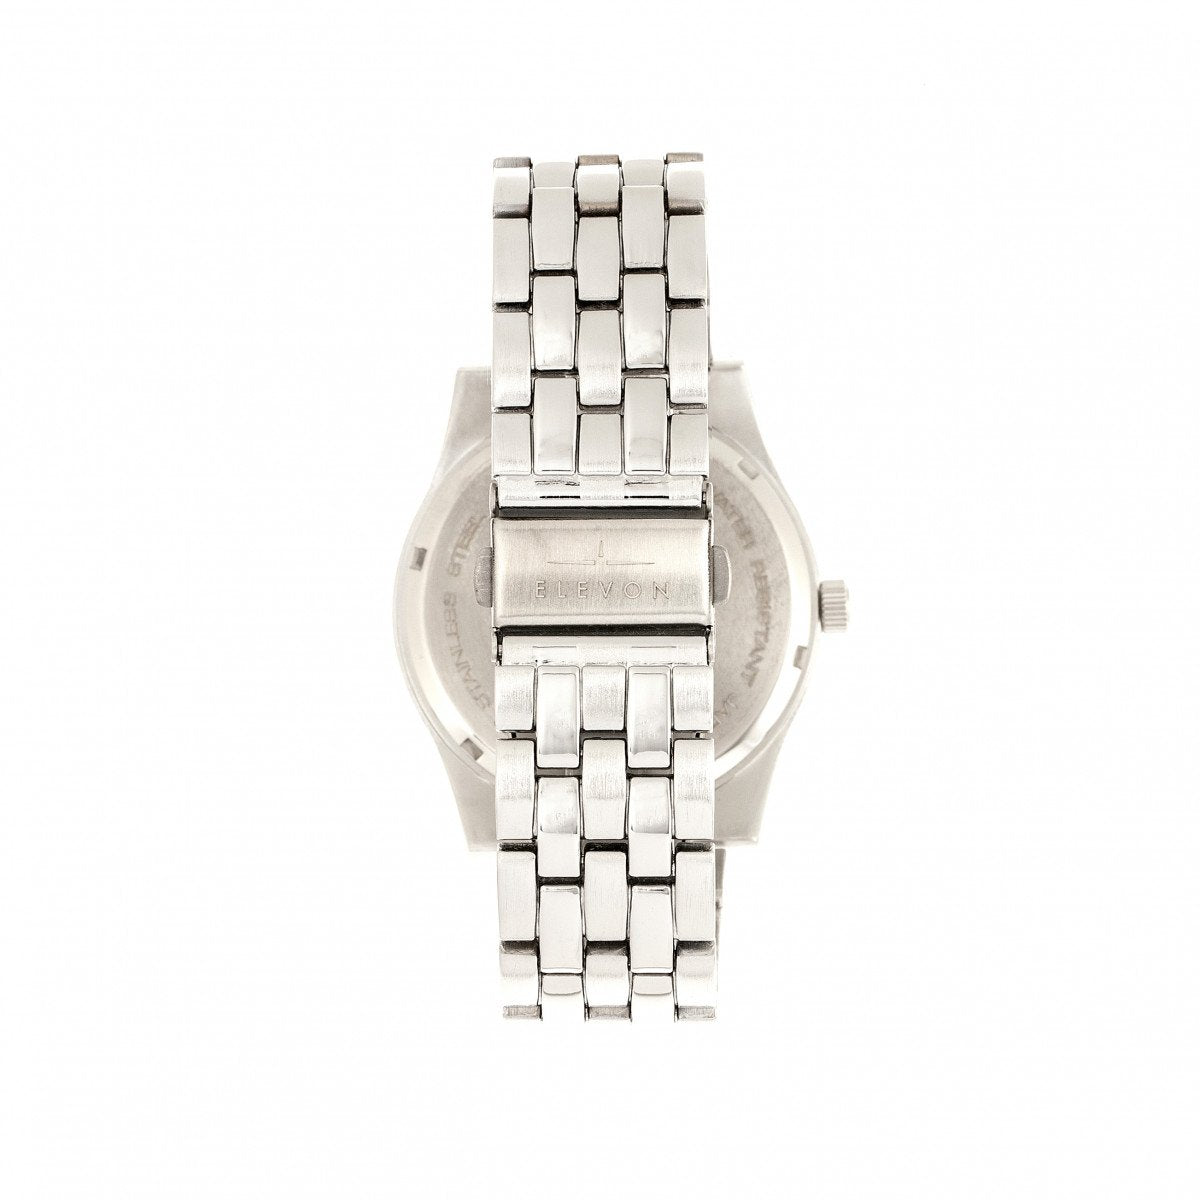 Elevon Garrison Bracelet Watch w/Date - Silver/White - ELE105-1